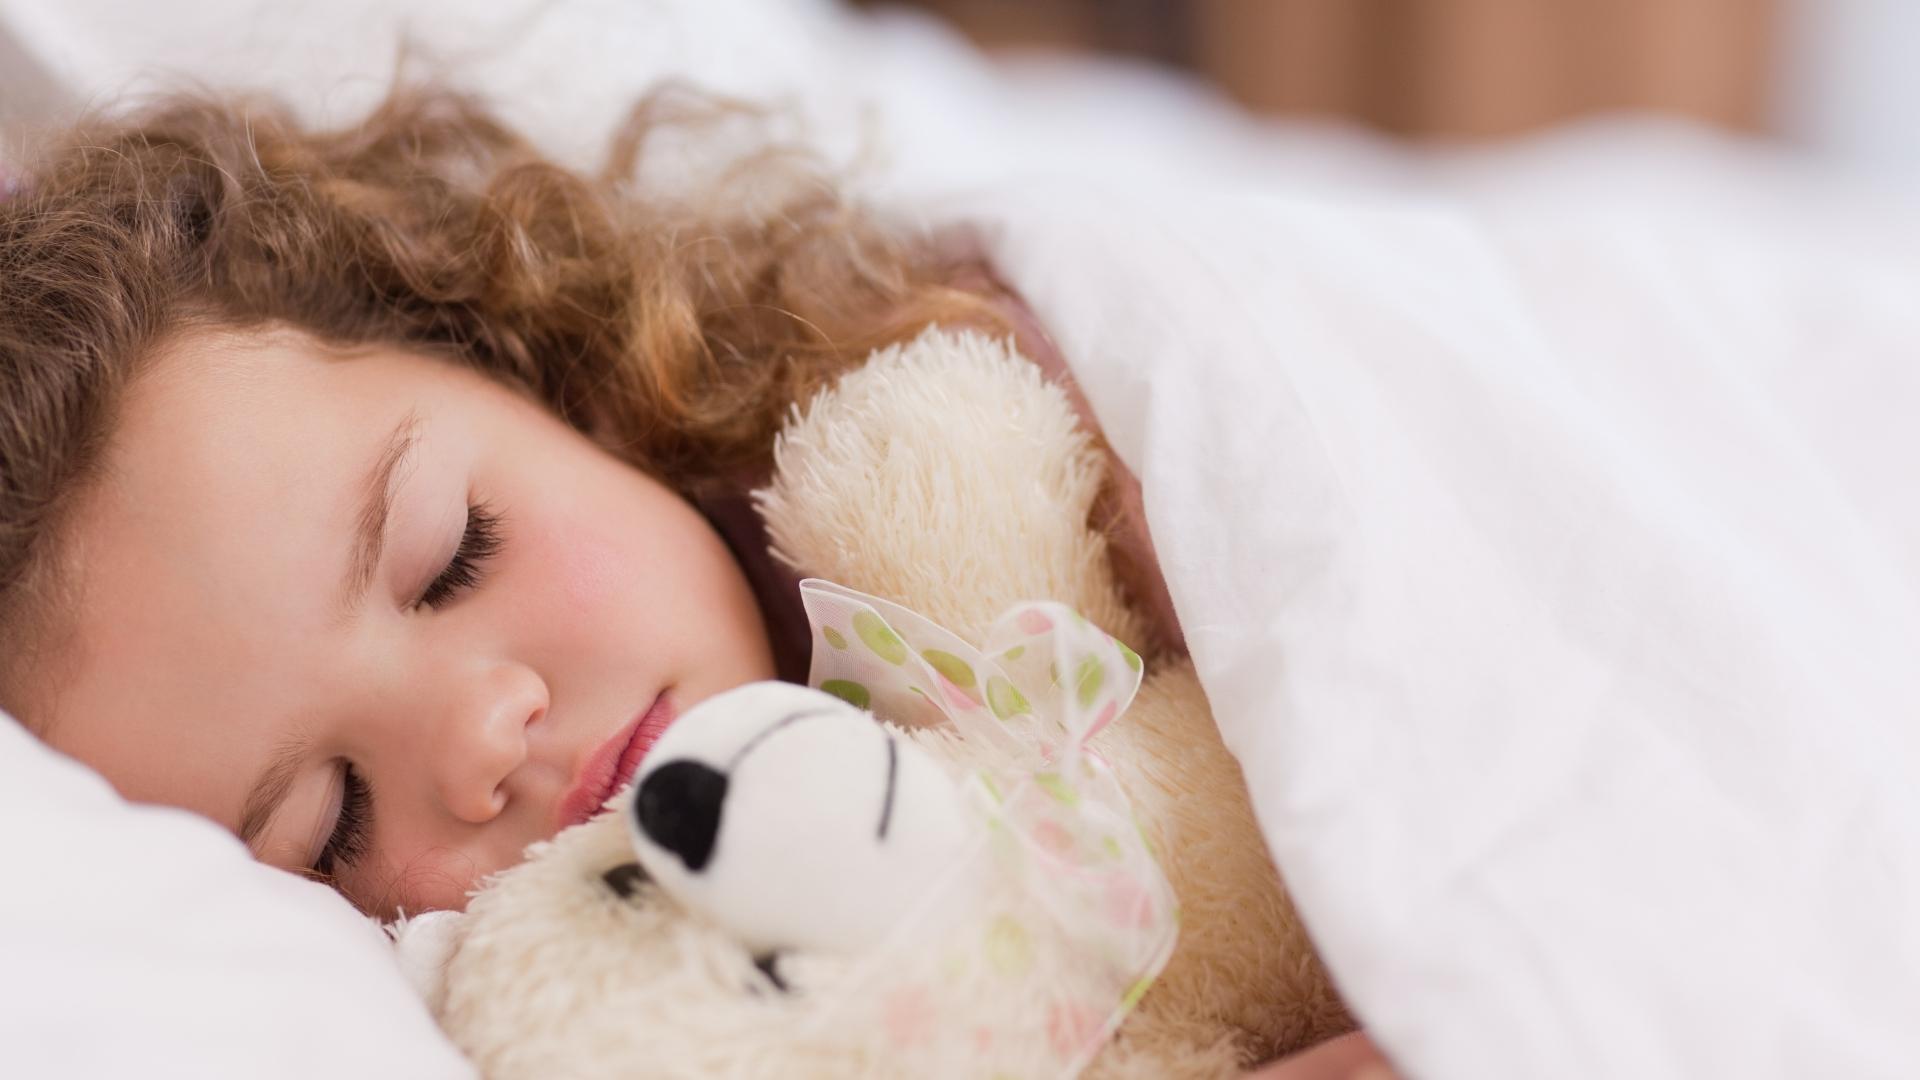 Bambina che dorme abbracciata a un peluche sotto una coperta bianca.